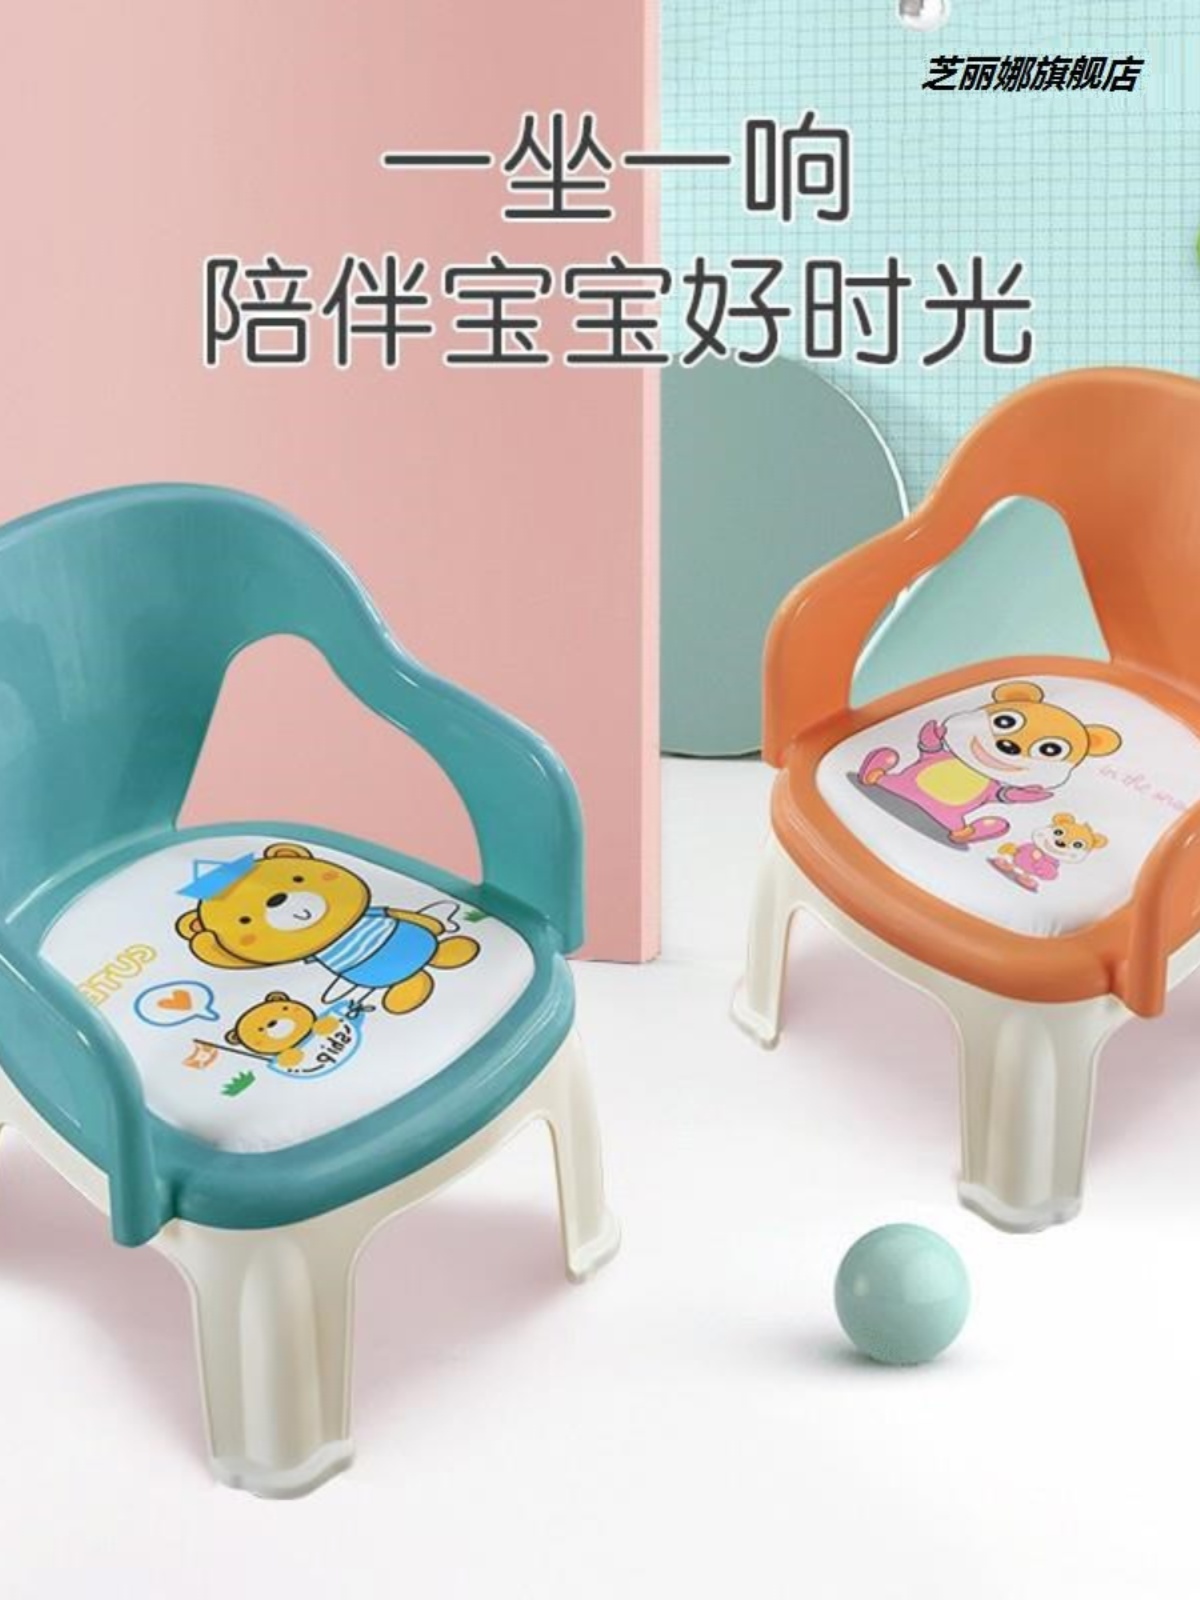 宝宝凳子塑料儿童靠背椅加厚卡通婴儿吃饭餐椅叫叫椅防摔防滑板凳